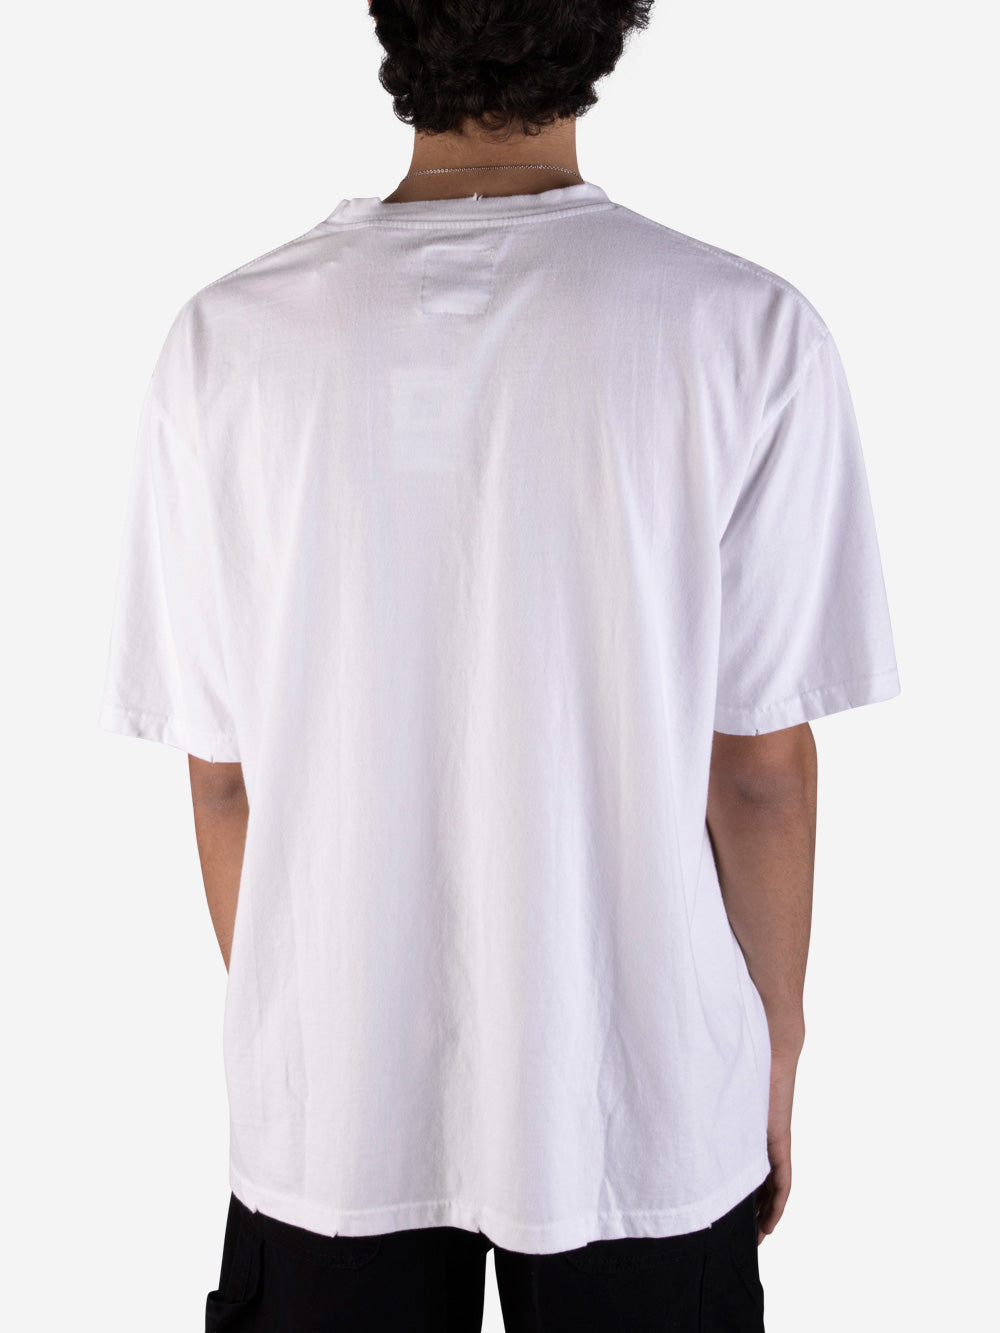 SOMEIT S.V. Vintage T-shirt bianca Bianco Urbanstaroma